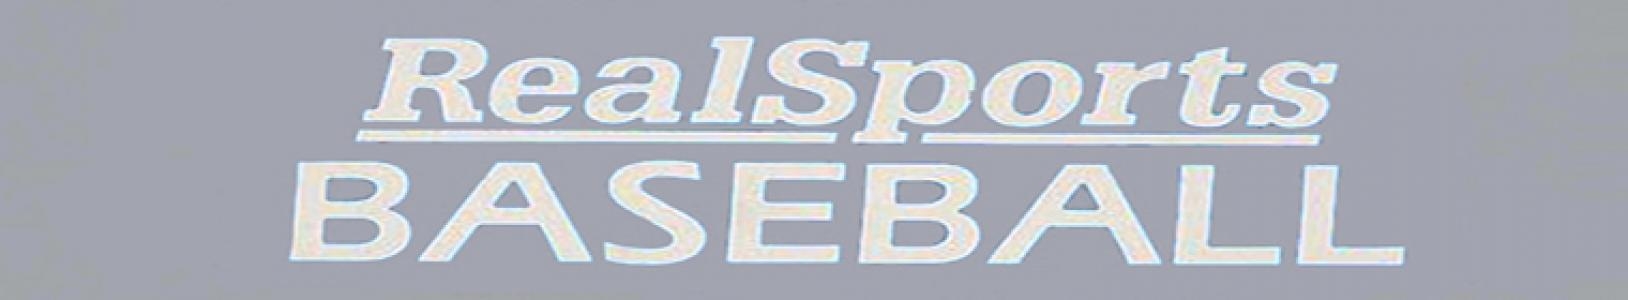 RealSports Baseball banner